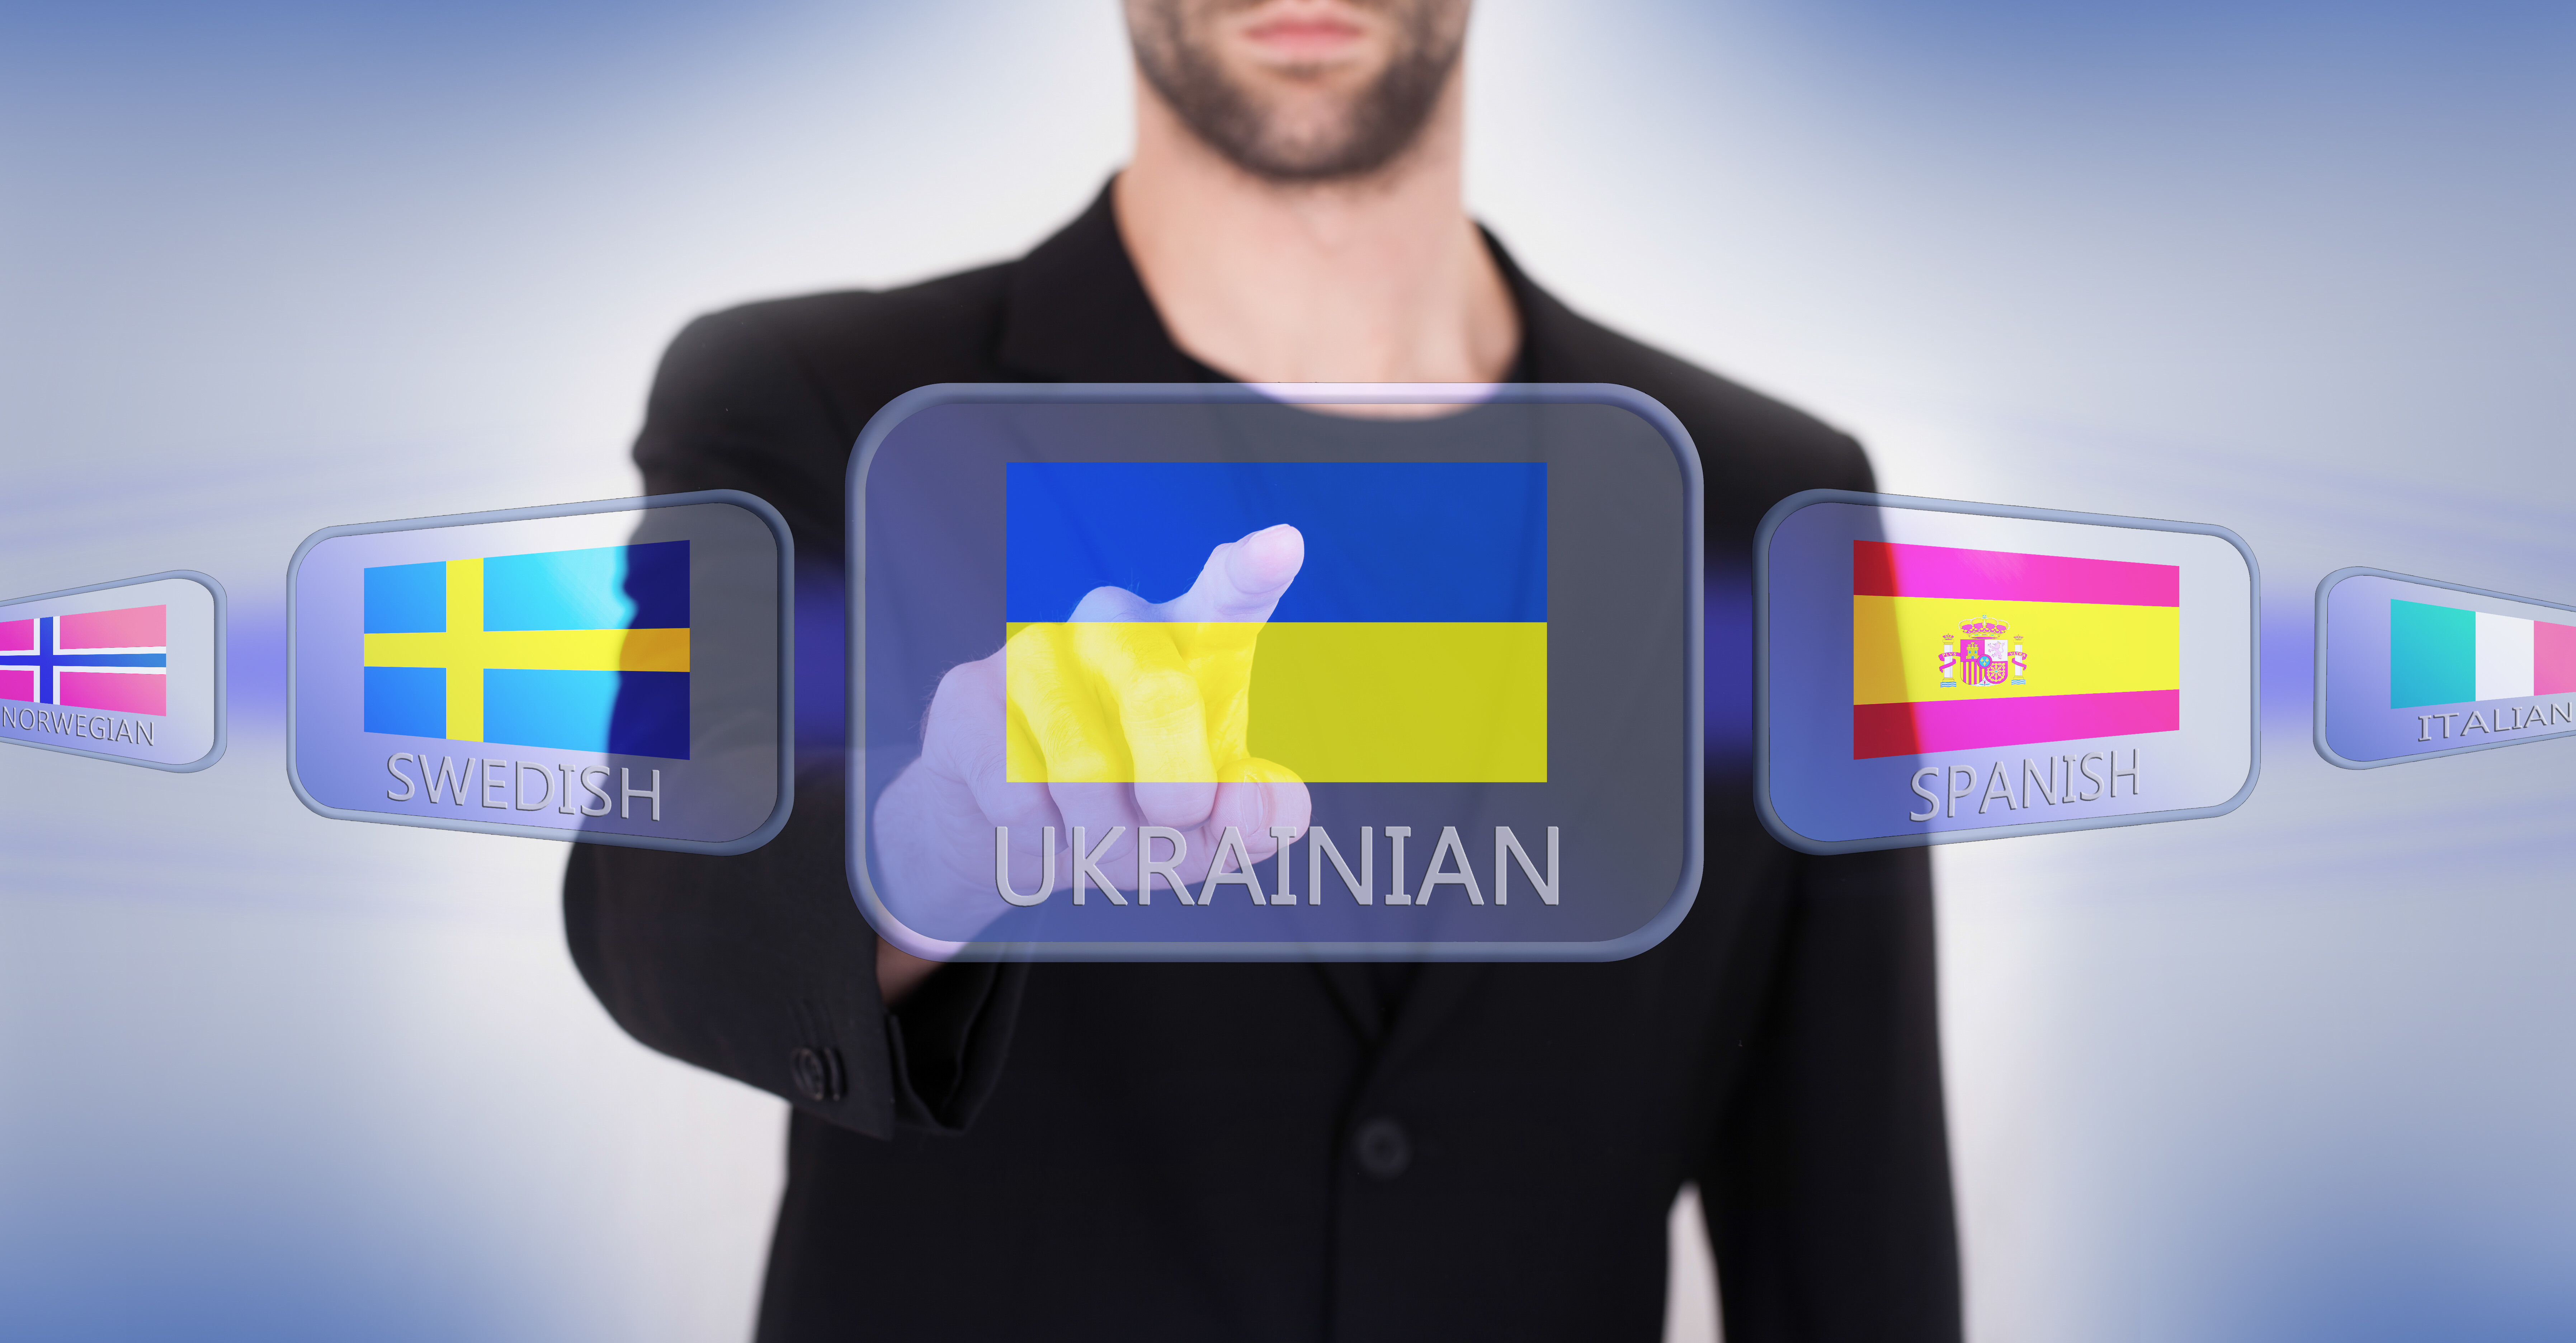 За десять років частка тих, хто вважає українську рідною, зросла на 20%